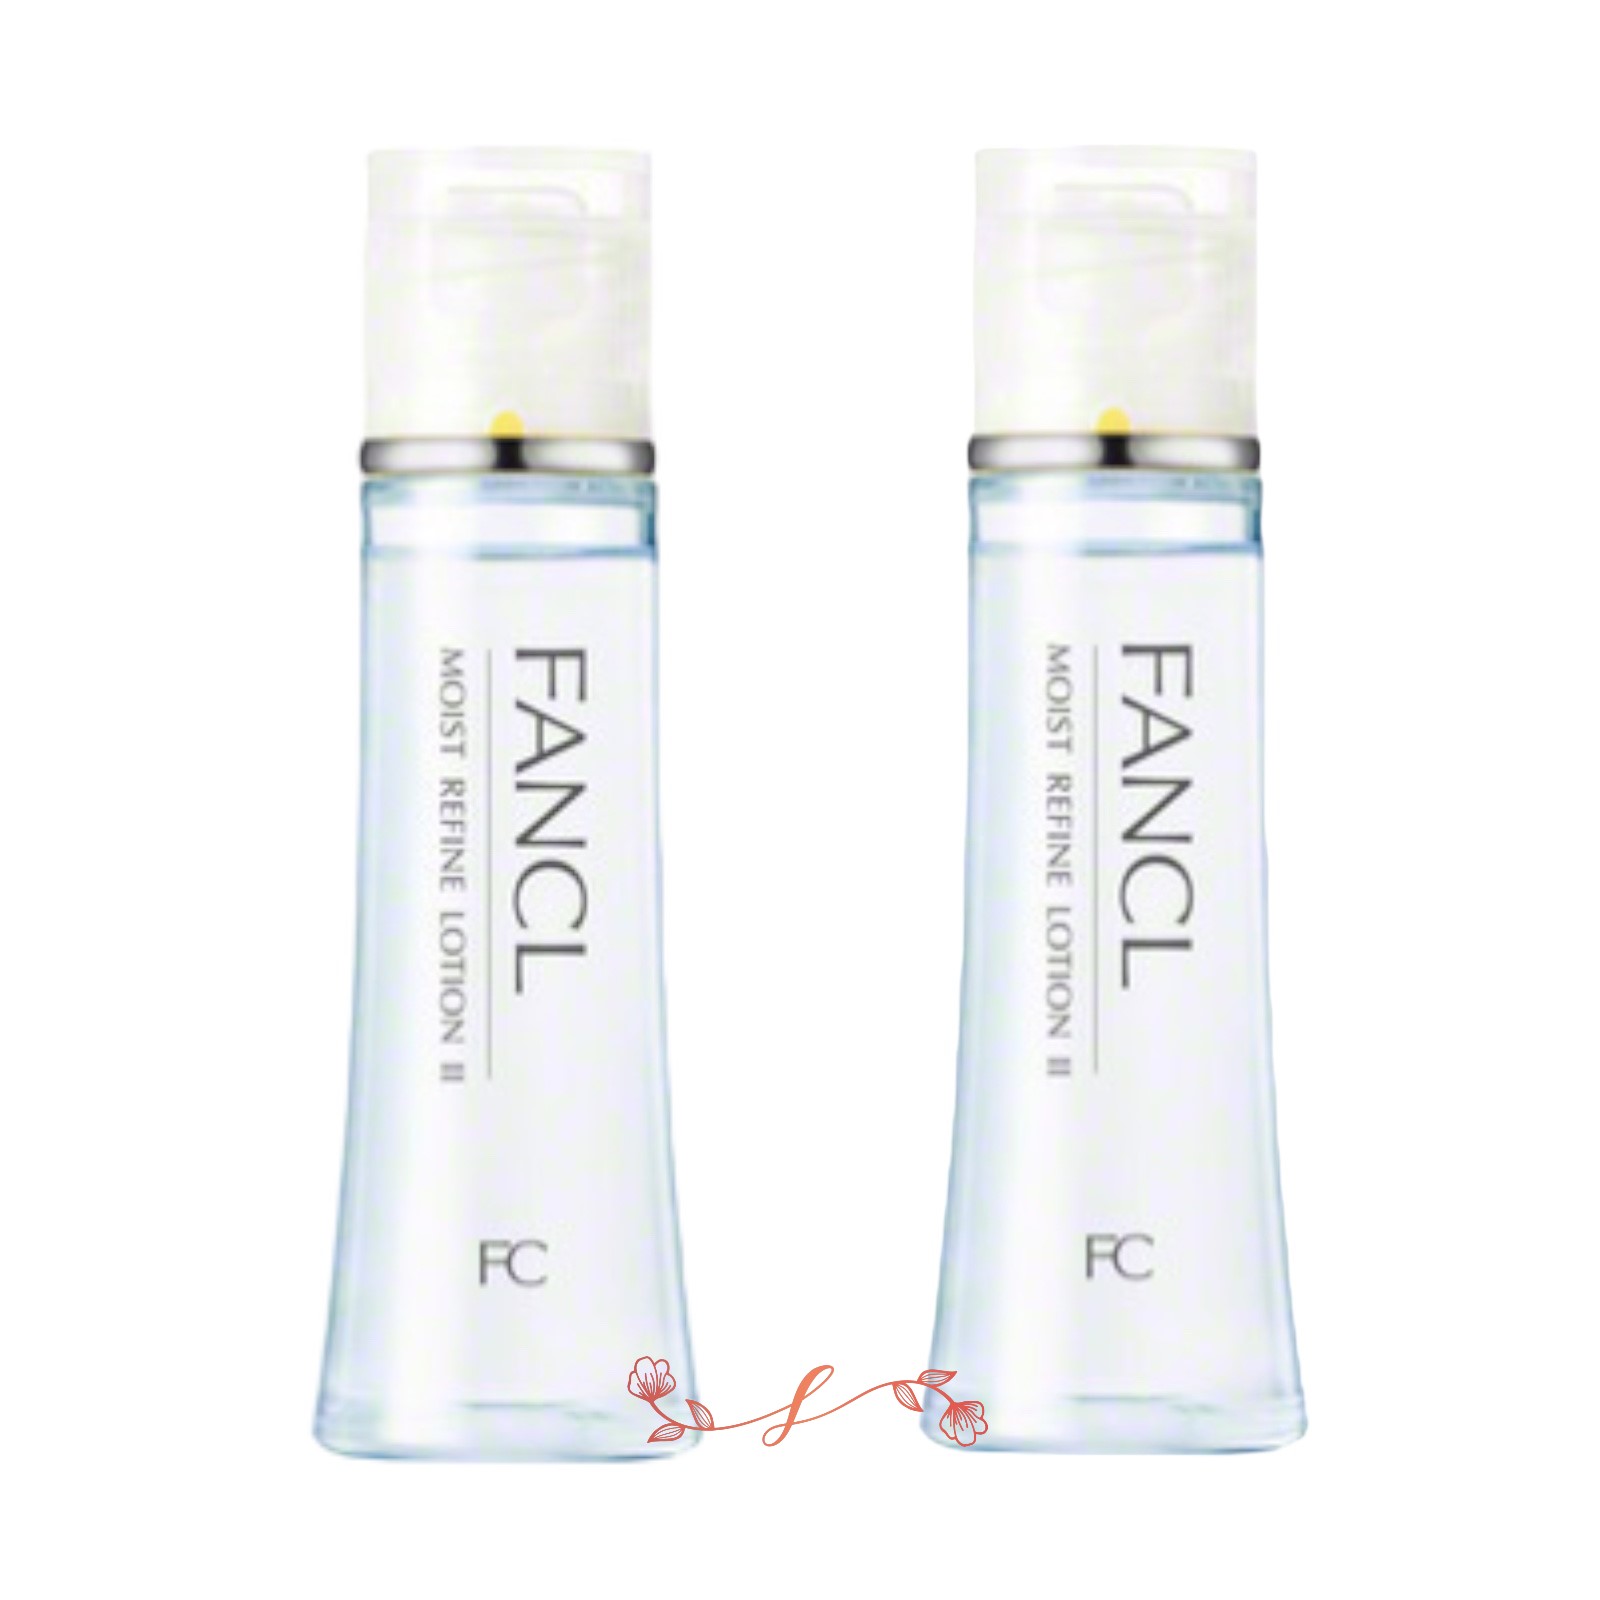 FANCL ファンケル モイストリファイン 化粧液 II しっとり 30ml ×2本 MOIST REFINE スキンケア、フェイスケア化粧水の商品画像